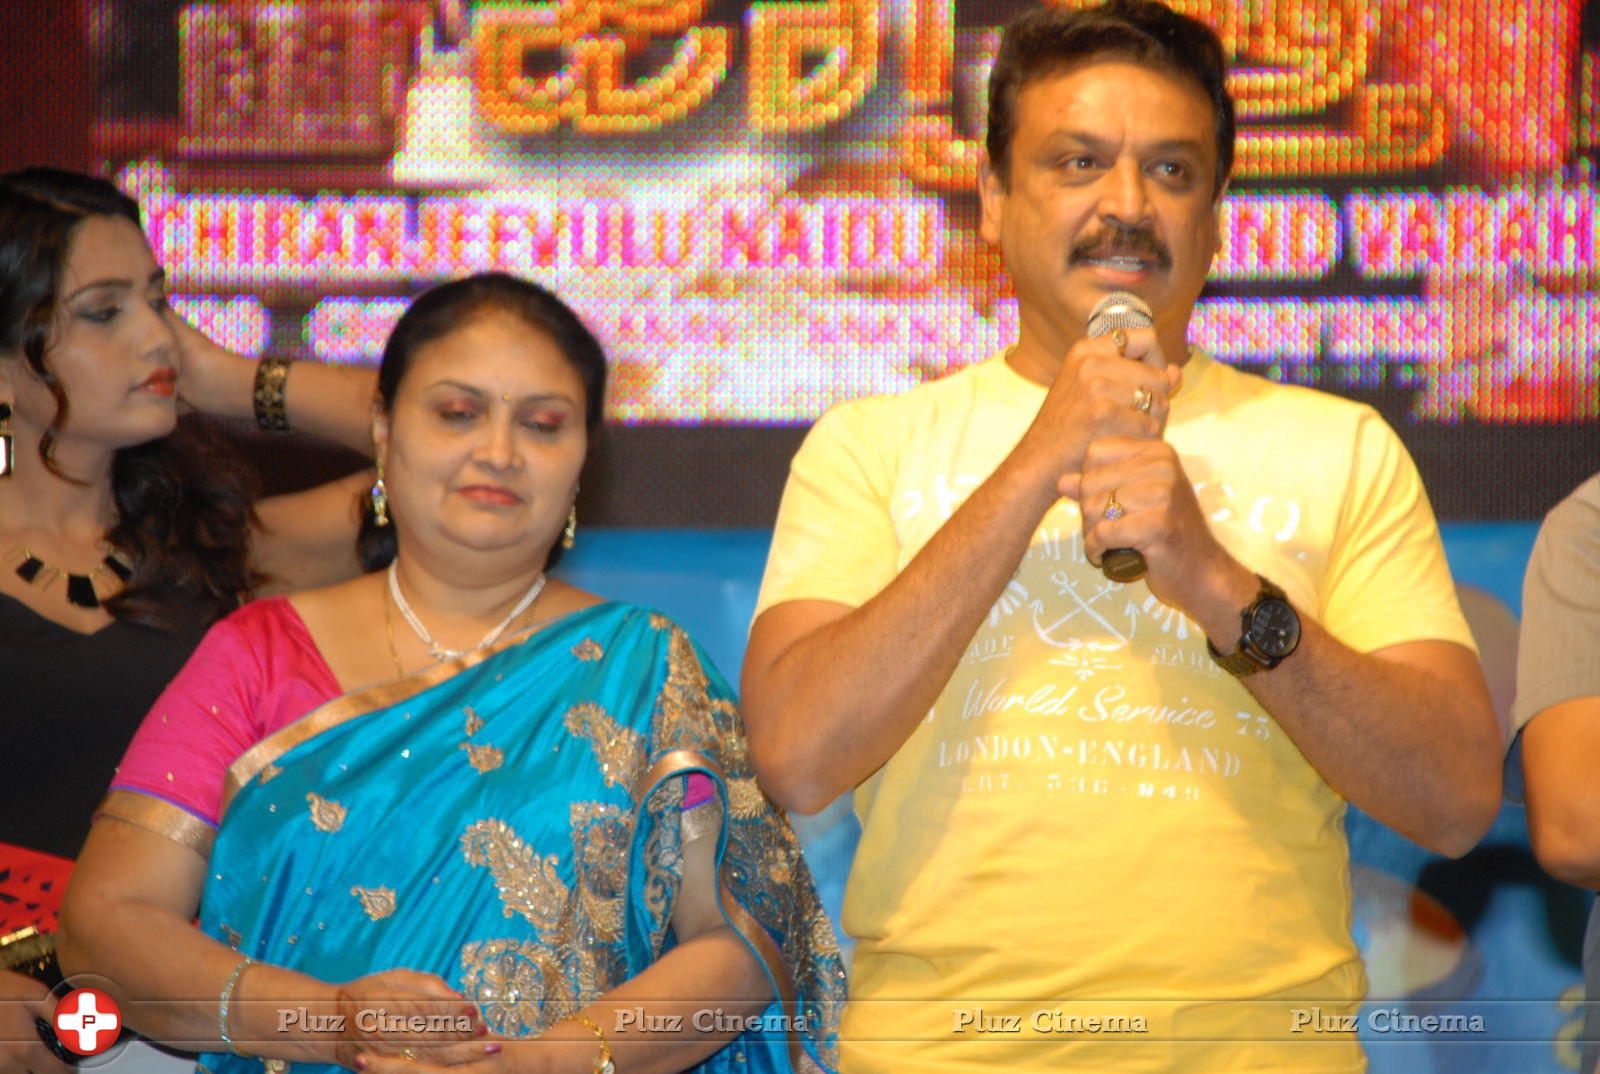 Manushulatho Jagratha Movie Audio Launch Stills | Picture 626844